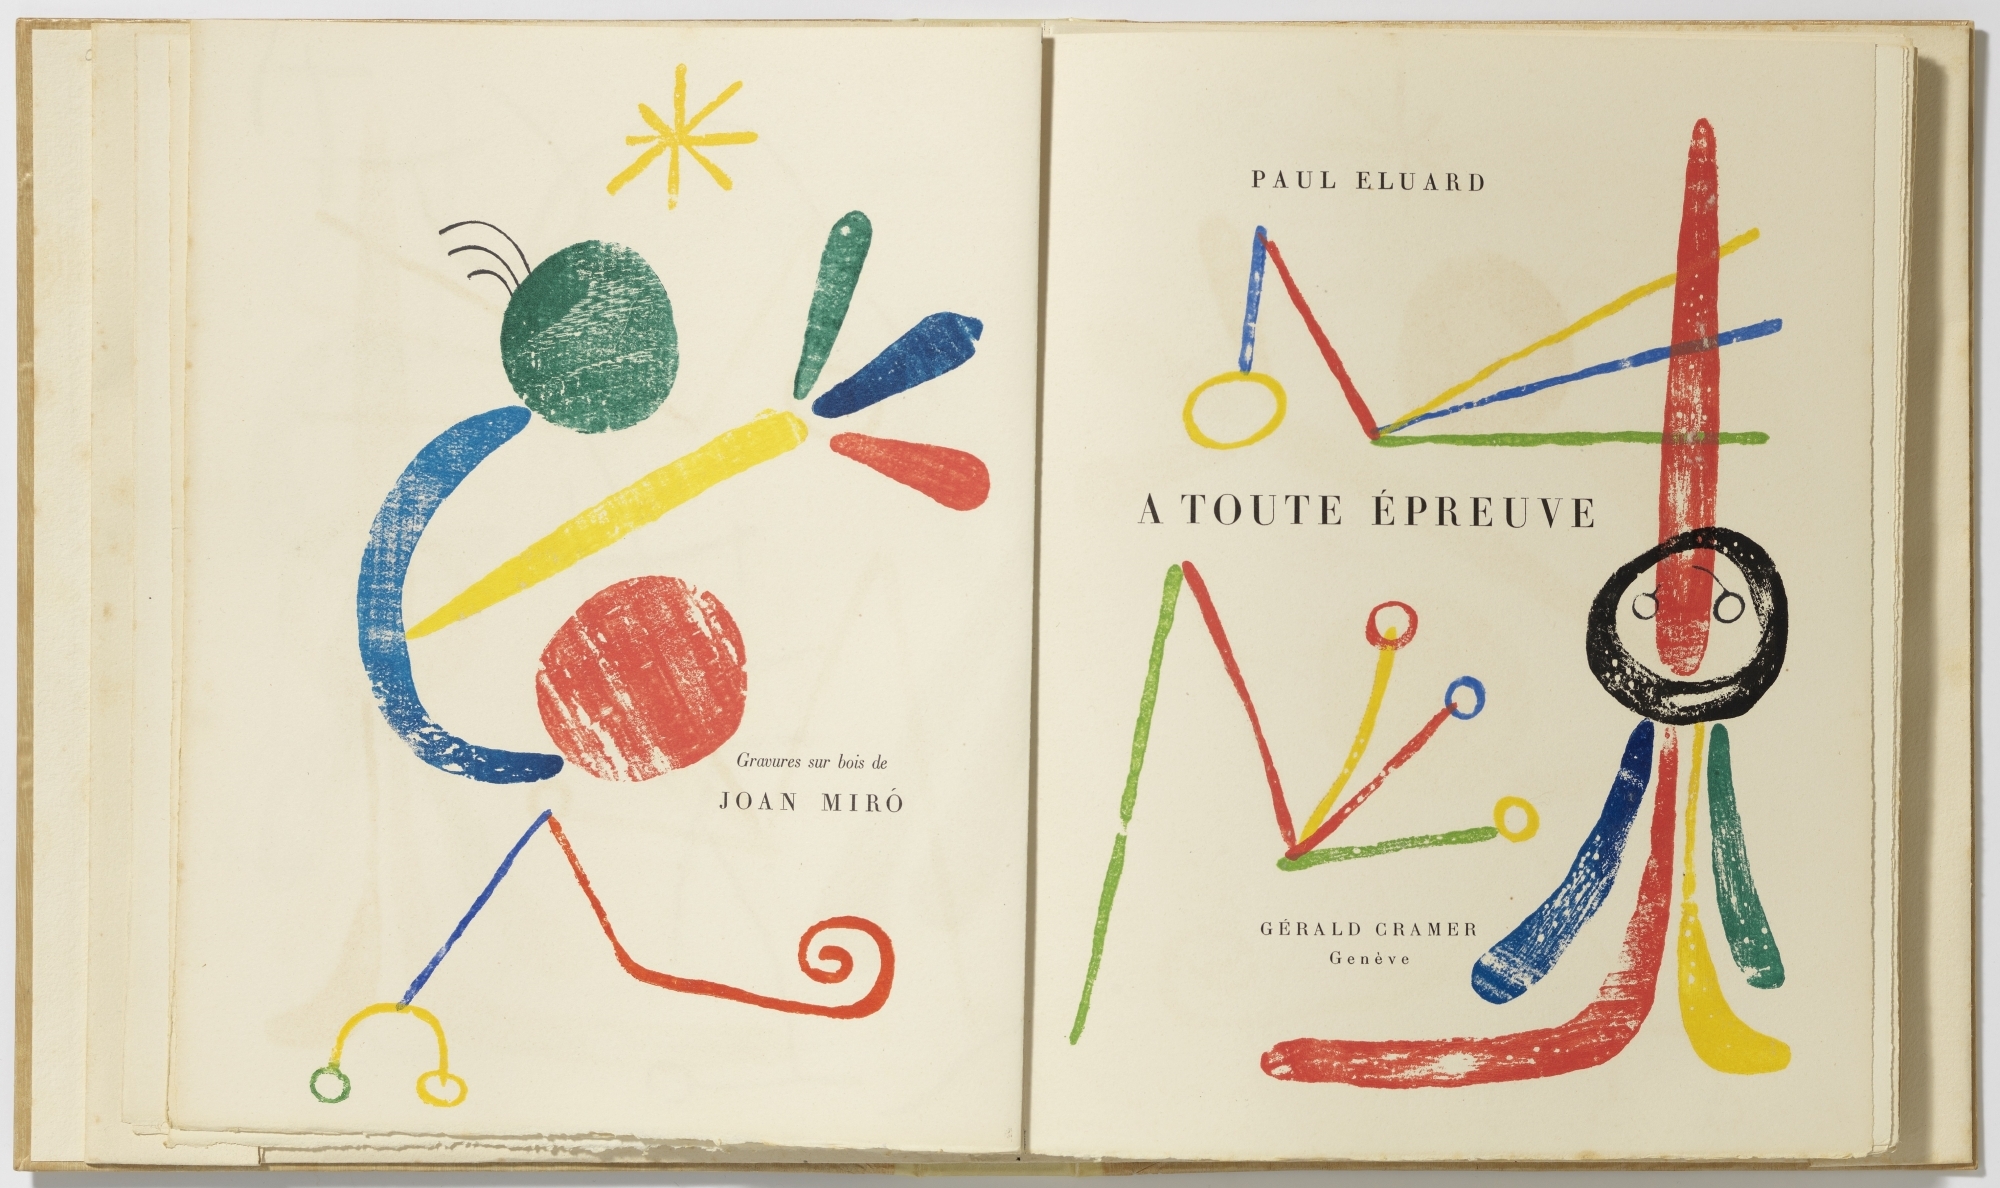 Un exemplaire original du livre sur papier japon, xylographies de Joan Mirό autour du texte typographié de Paul Éluard.